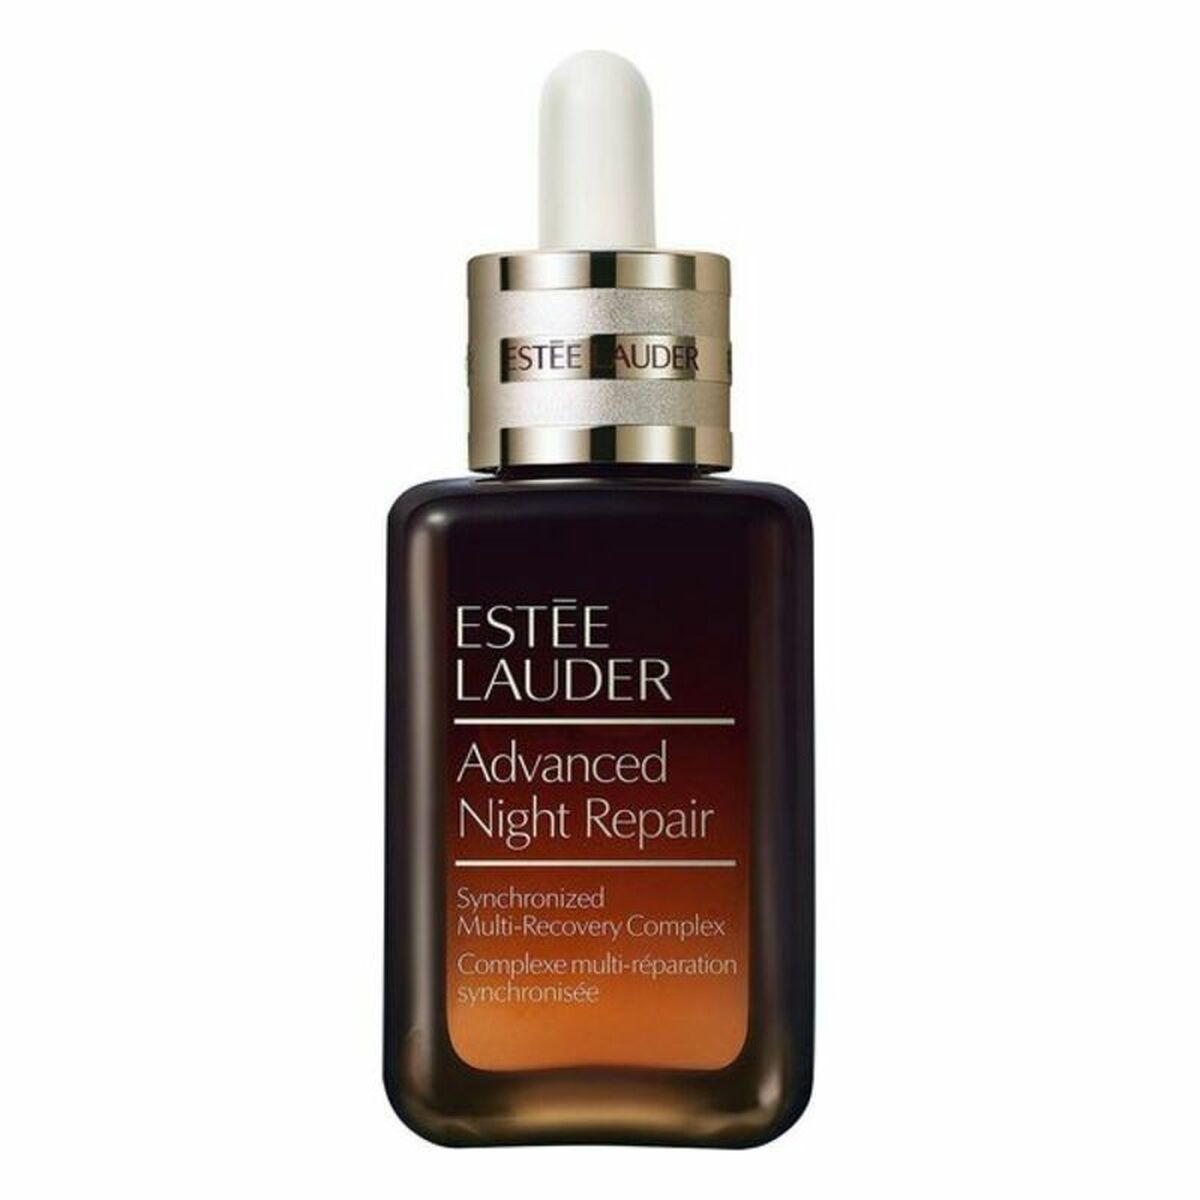 Sérum visage Estee Lauder Advanced Night Repair (30 ml)